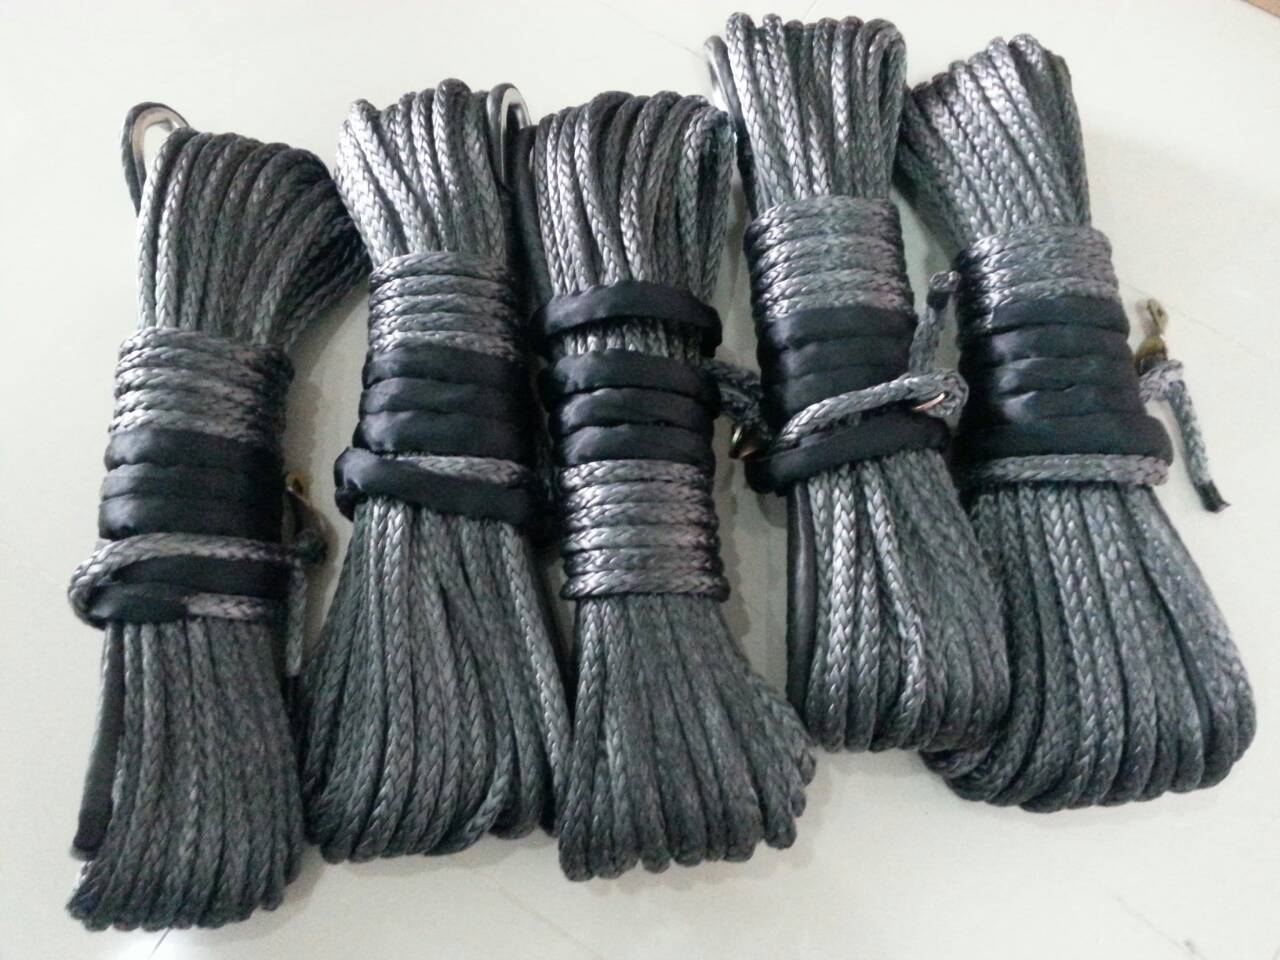 
	เชือกวินส์ Dyneema rope สีเทา 10 มิล ยาว 28 เมตร สินค้าพร้อมตัดส่ง 
